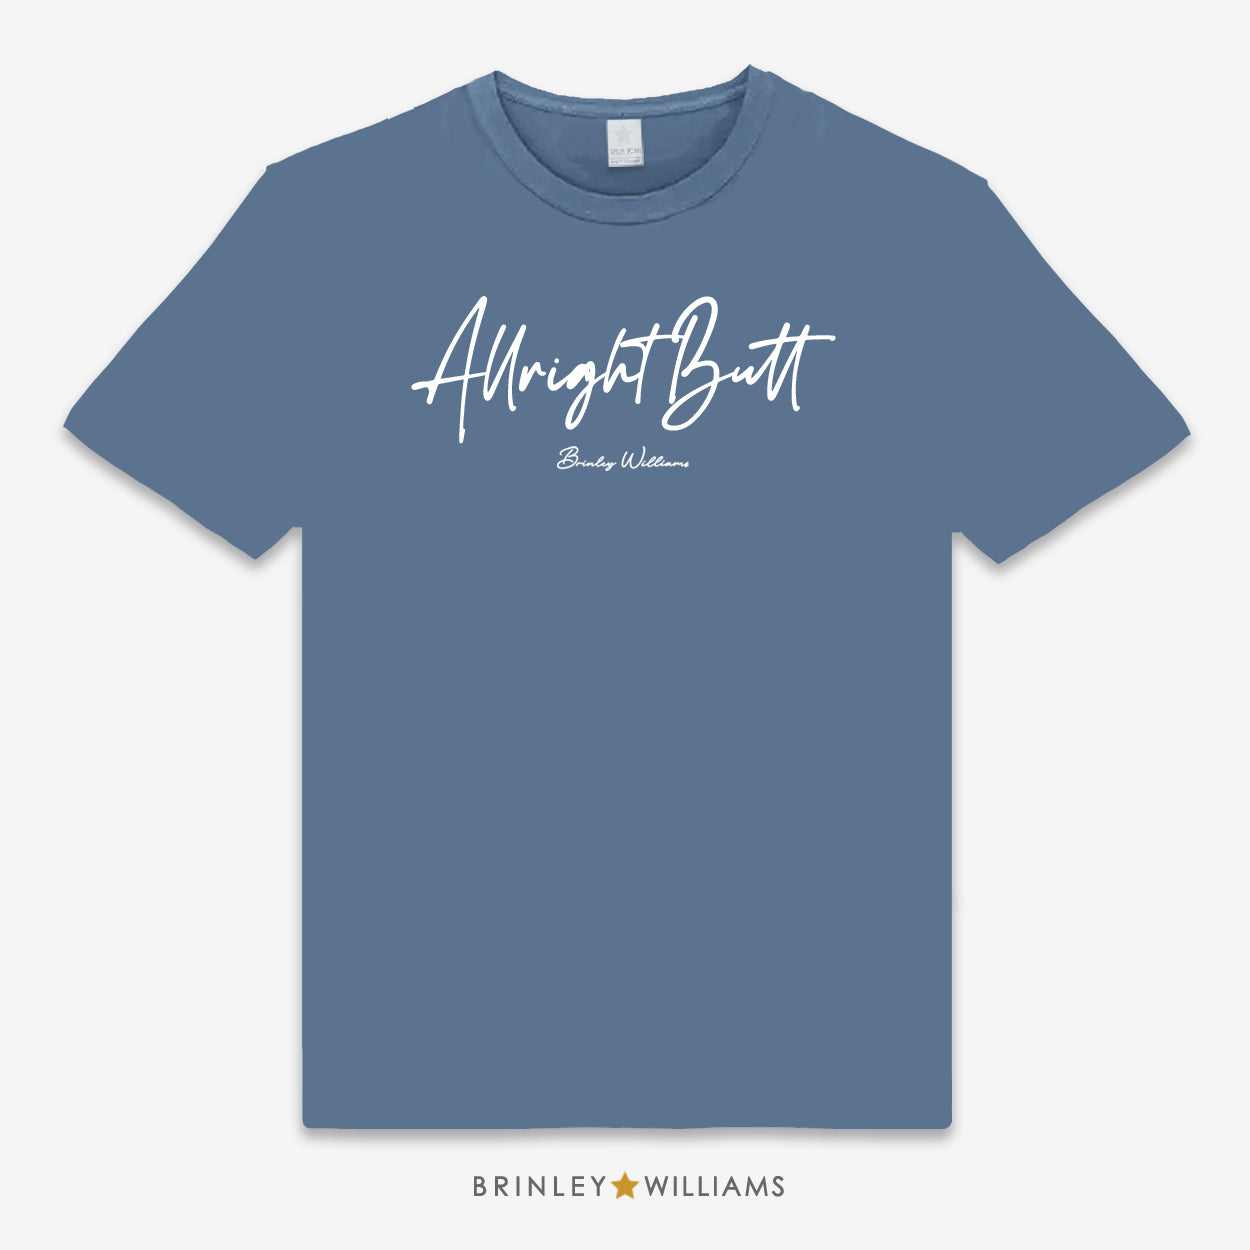 Allright Butt Unisex Classic T-shirt - Indigo Blue